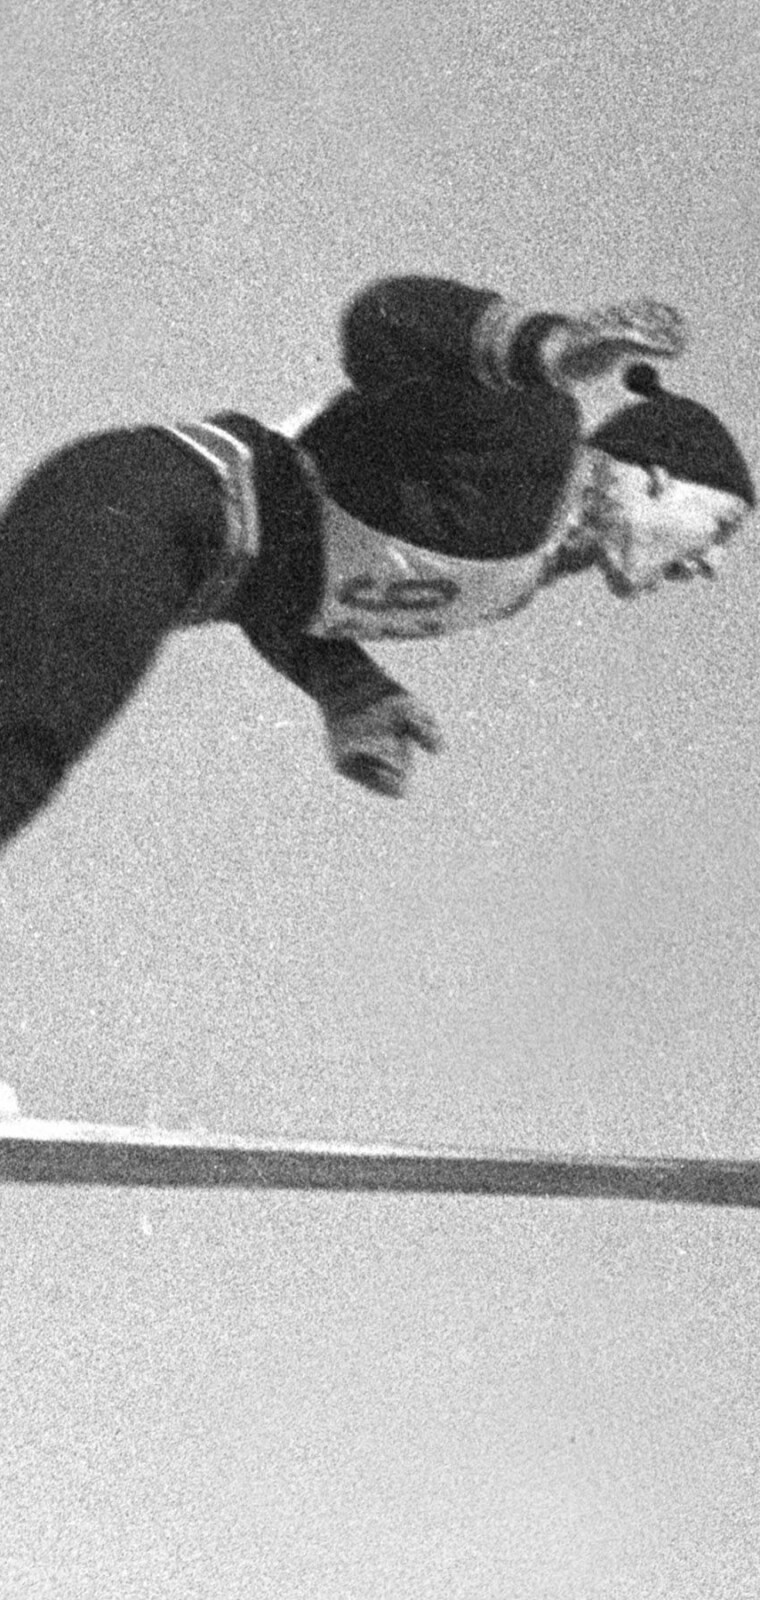 Holmenkollen, Oslo 19470302. Skihopper Torbjrn Falkanger i aksjon under det 50. hopprennet i Holmenkollen.
Foto: NTB arkiv / NTB